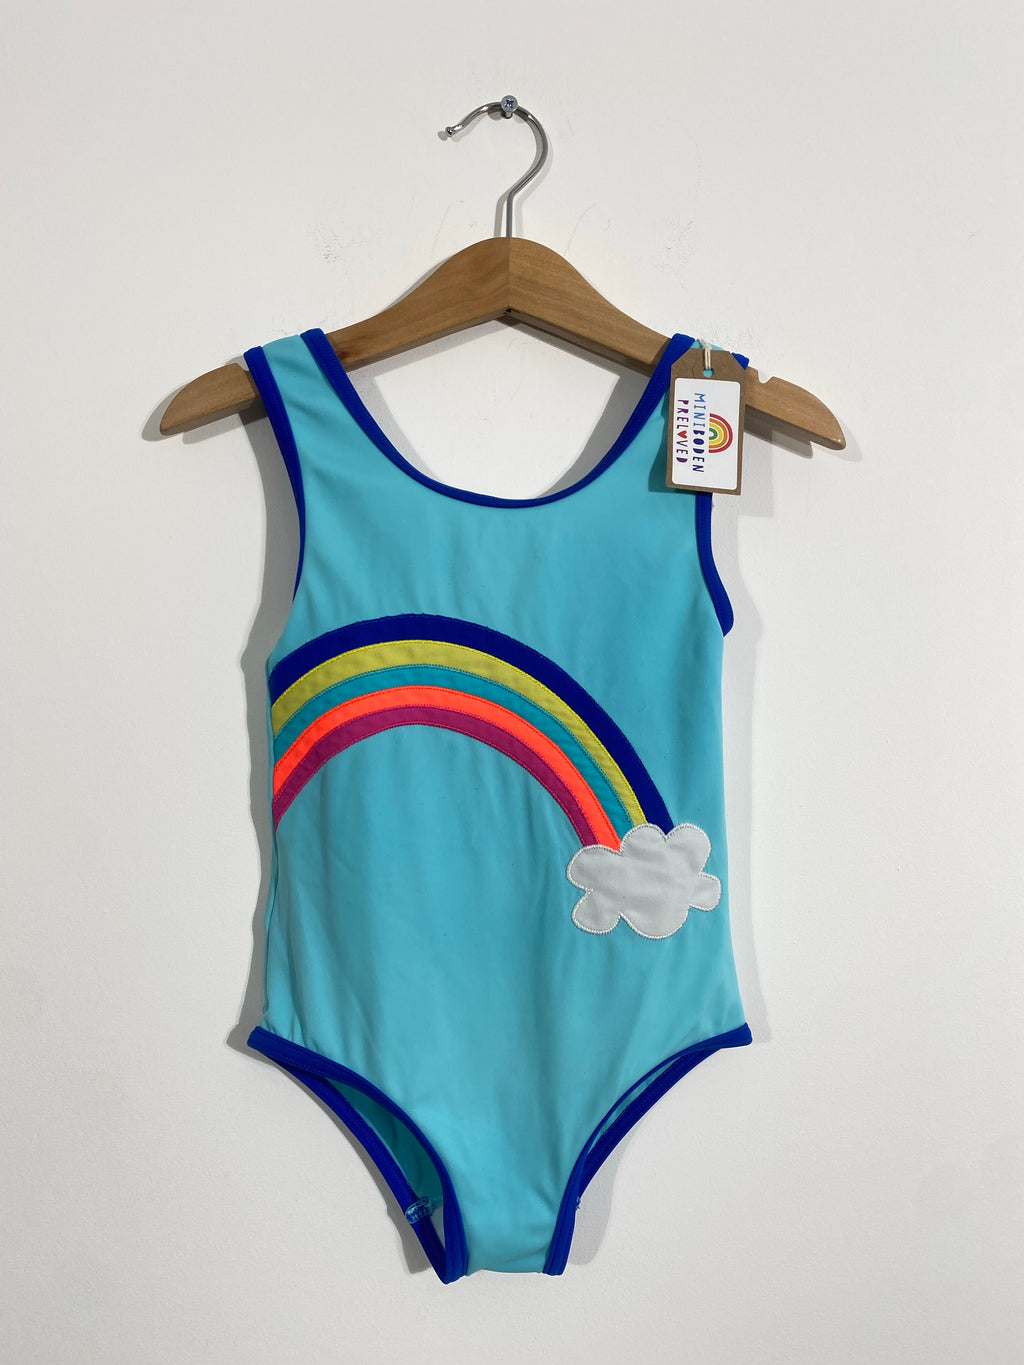 Vibrant Appliqué Rainbow Swimsuit (4-5 Years)